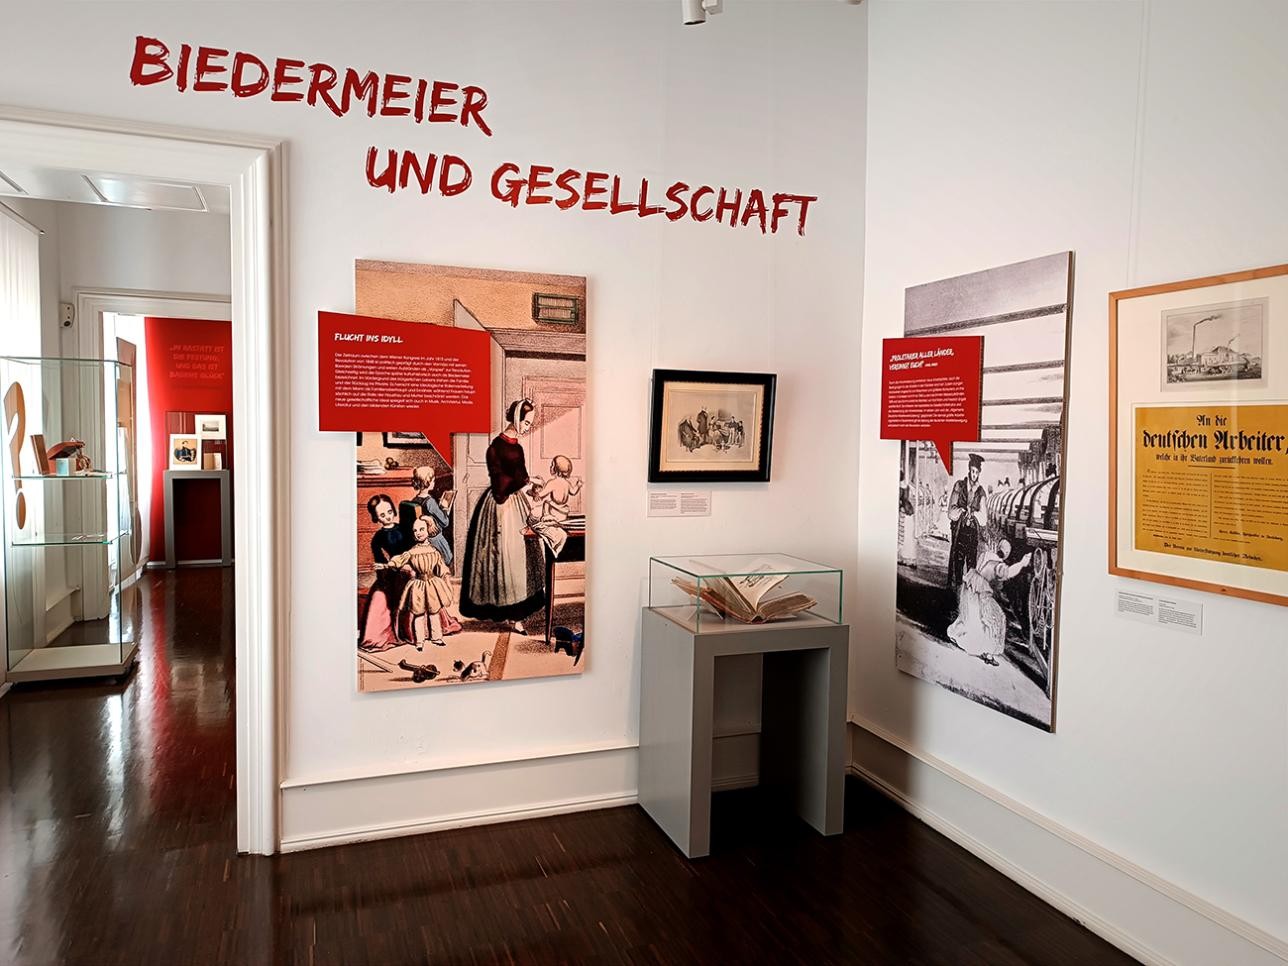 Salle avec des images et des textes d'information sur l'exposition temporaire : "Pour la liberté ! Rastatt et la révolution 1848/49"